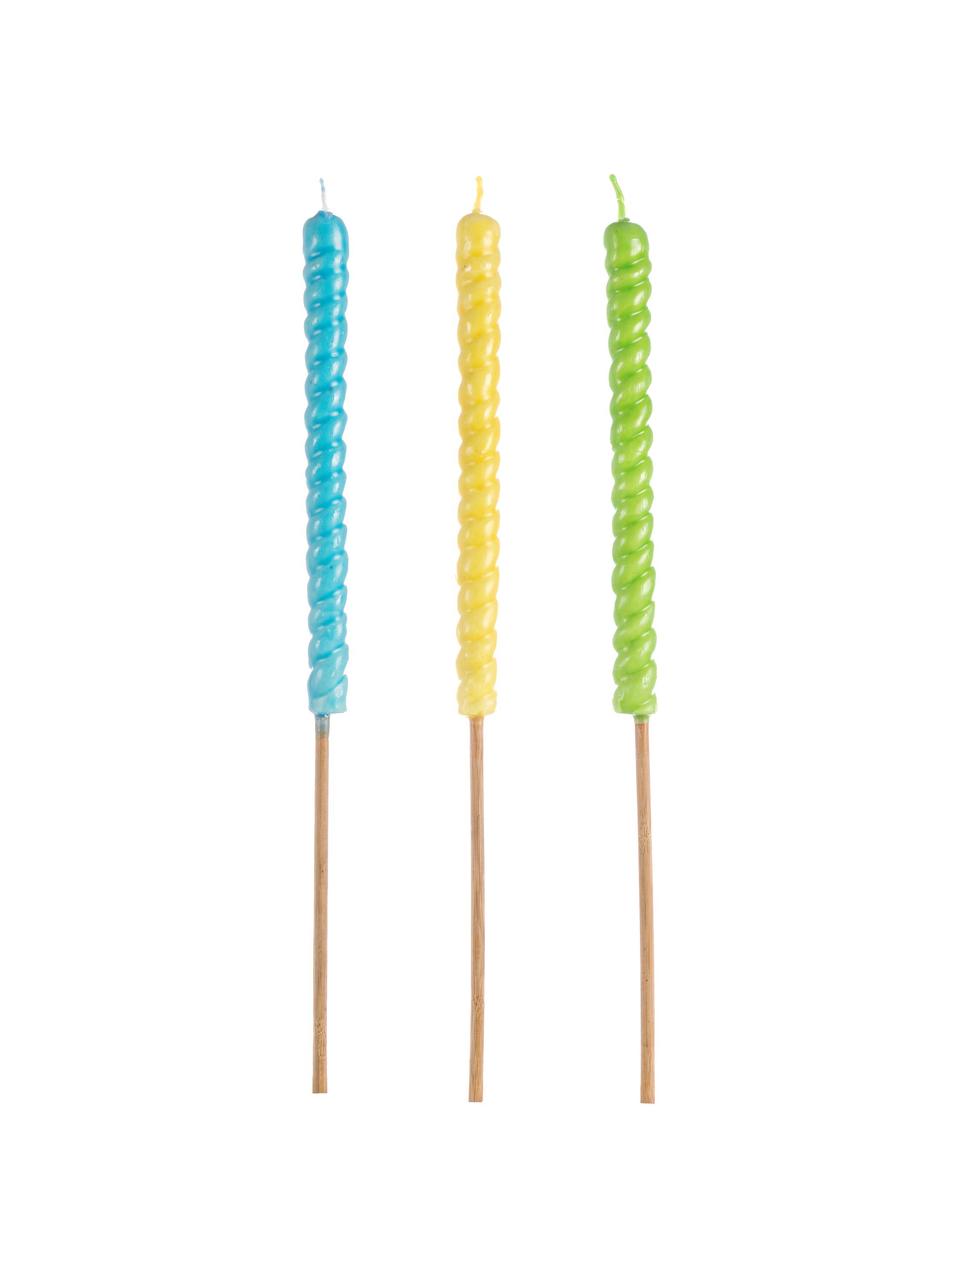 Torches Citronella, 3 élém., Bleu, jaune, vert, Long. 50 cm